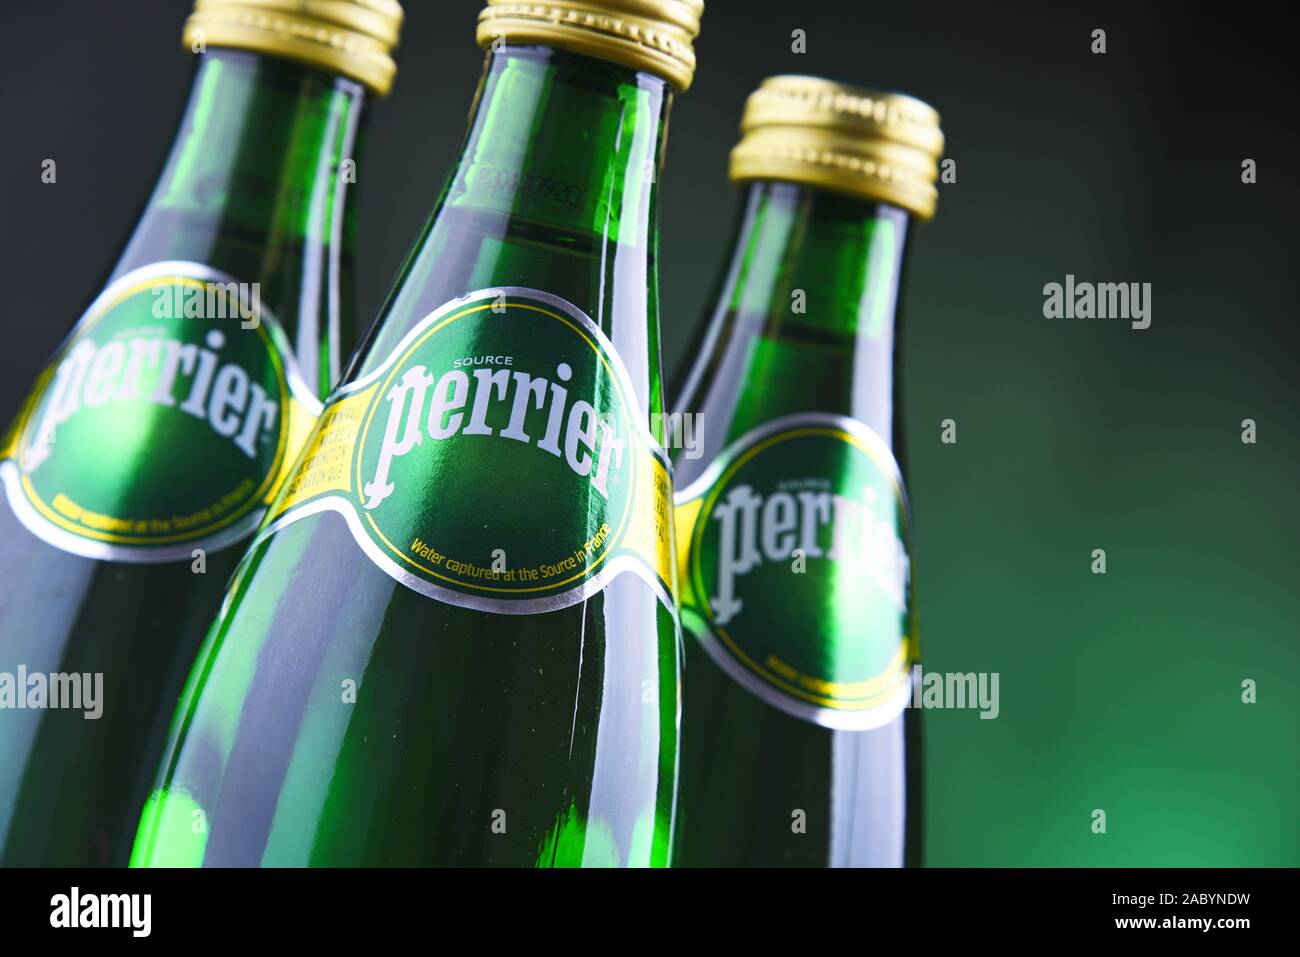 POZNAN, POL - Jan 24, 2019: bottiglie di Perrier, un marchio francese di naturale acqua minerale in bottiglia venduti in tutto il mondo e disponibili in 140 paesi. Foto Stock